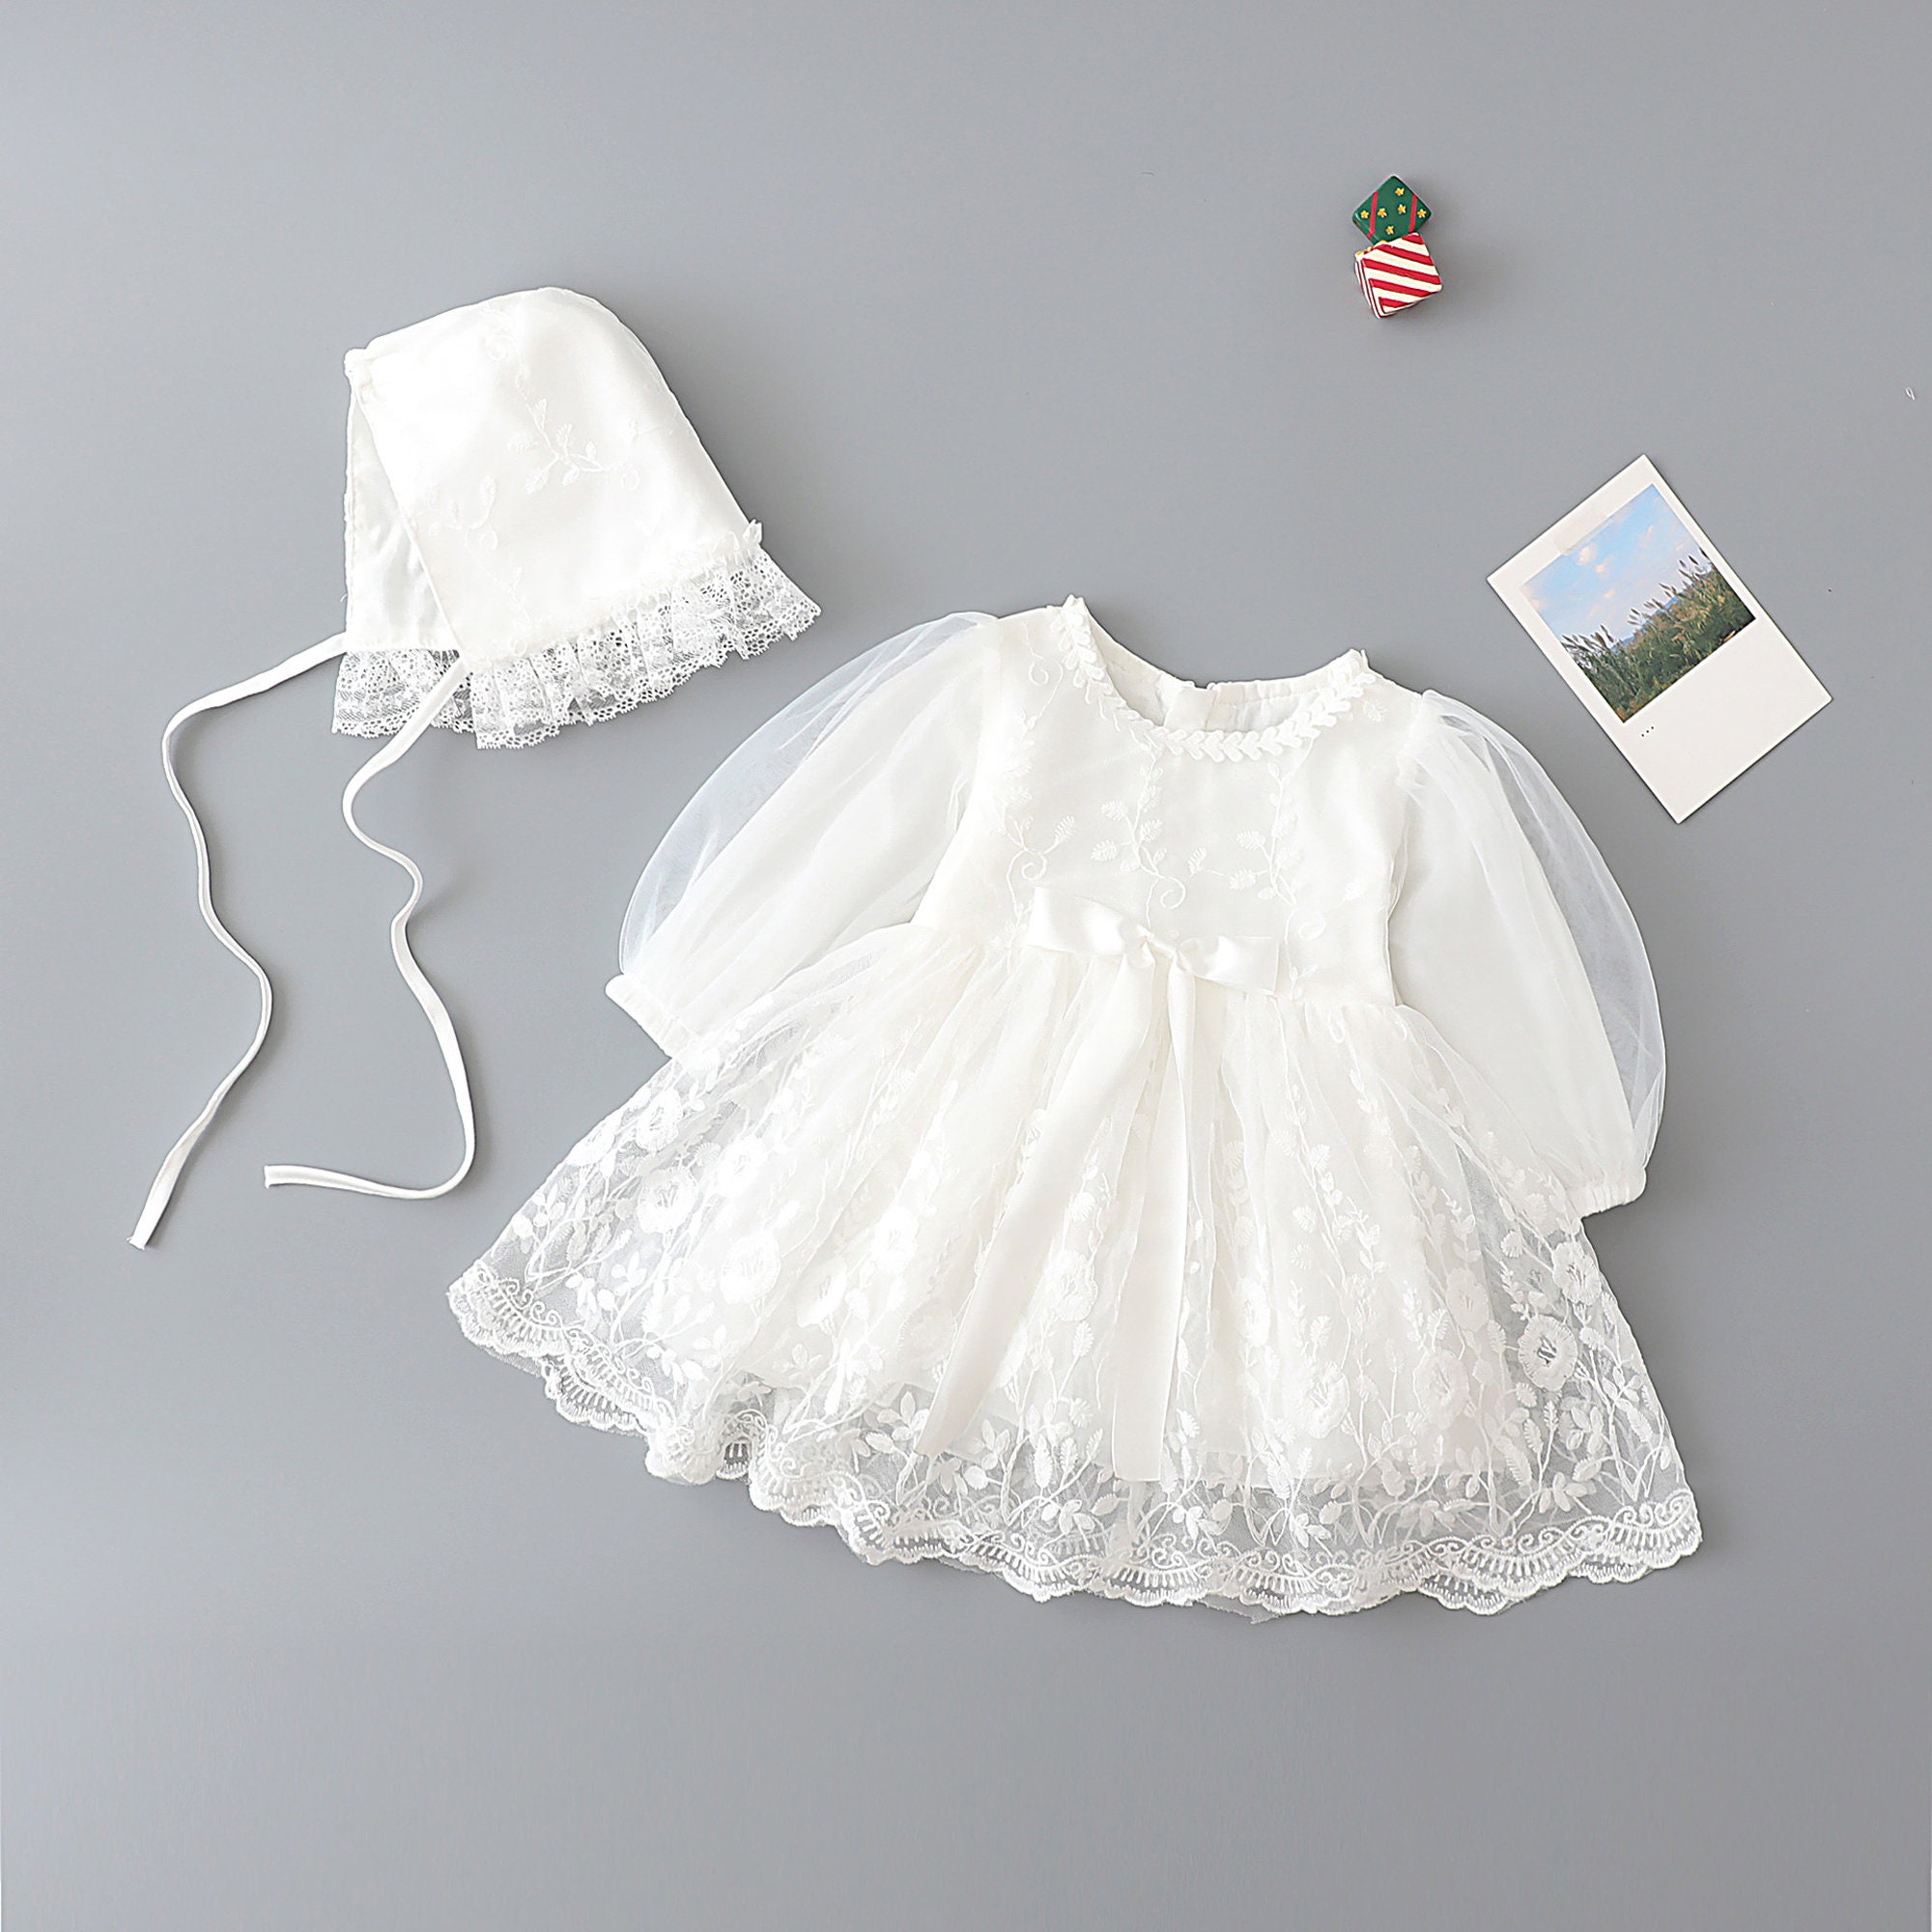 Kleding Meisjeskleding Babykleding voor meisjes Jurken Vintage Doopjurk 3 delige Set Sheer &Lace 